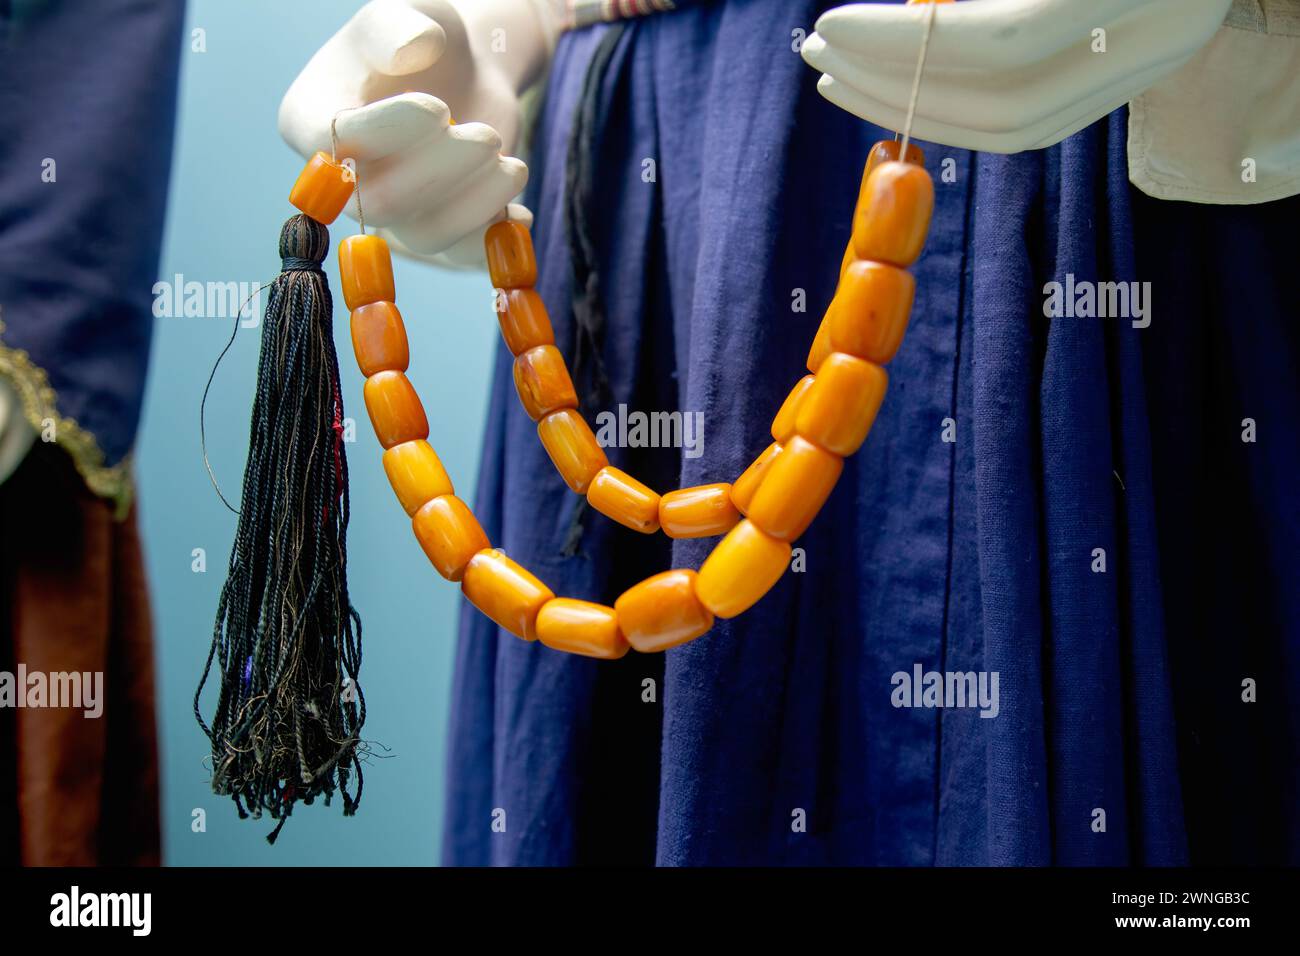 Le perle preoccupanti (komboloi o kompoloi), una serie di perle manipolate con una o due mani e utilizzate per passare il tempo nella cultura greca e cipriota. Foto Stock